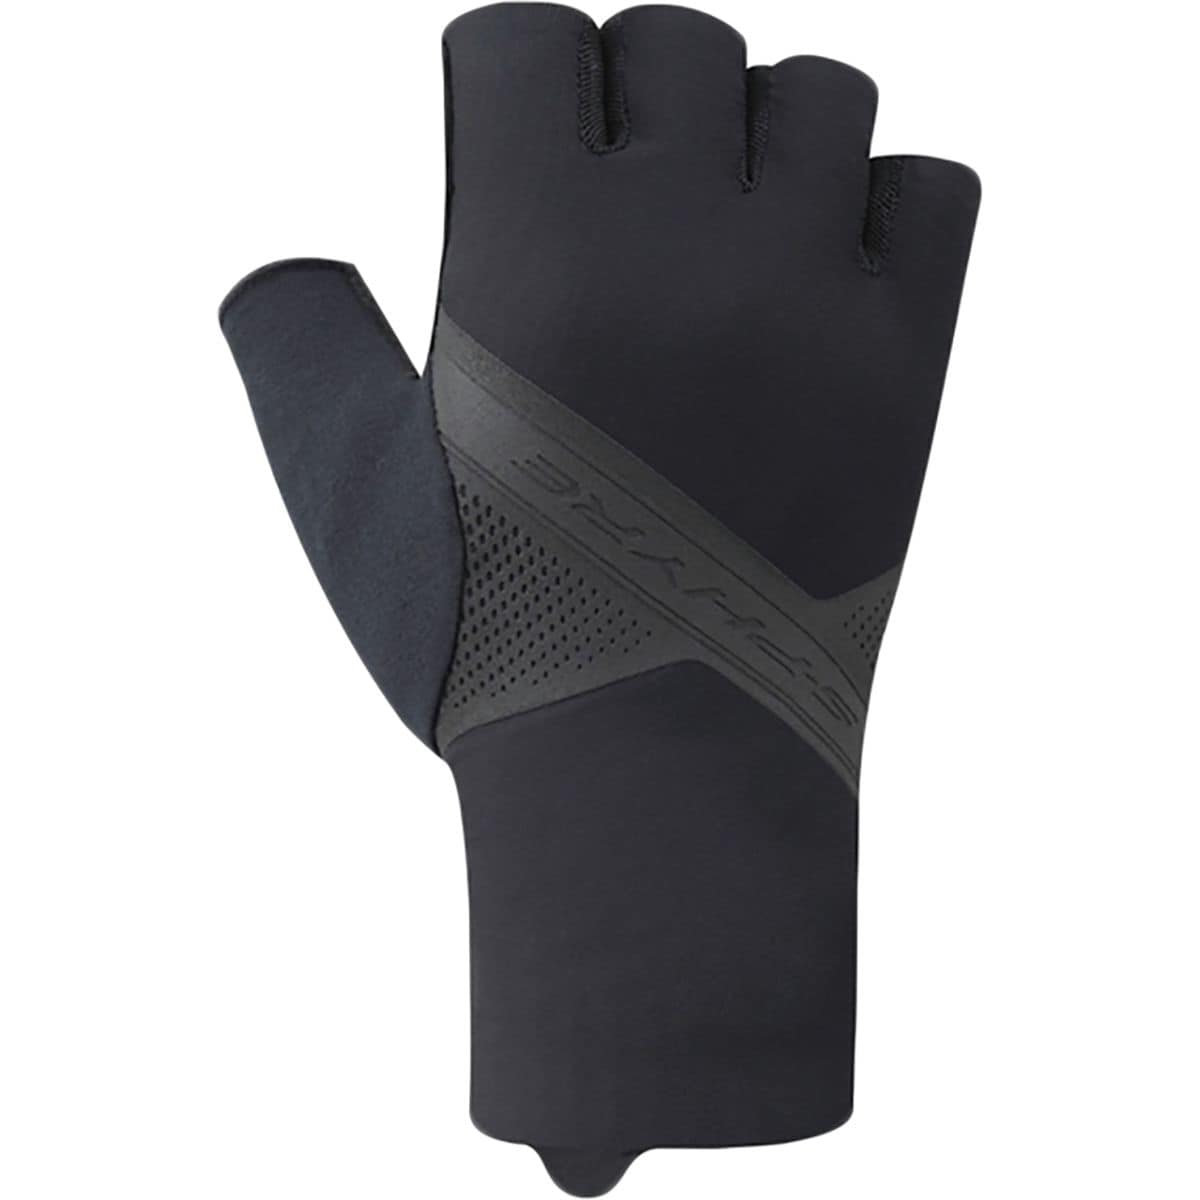 Shimano S-PHYRE Glove - Men's